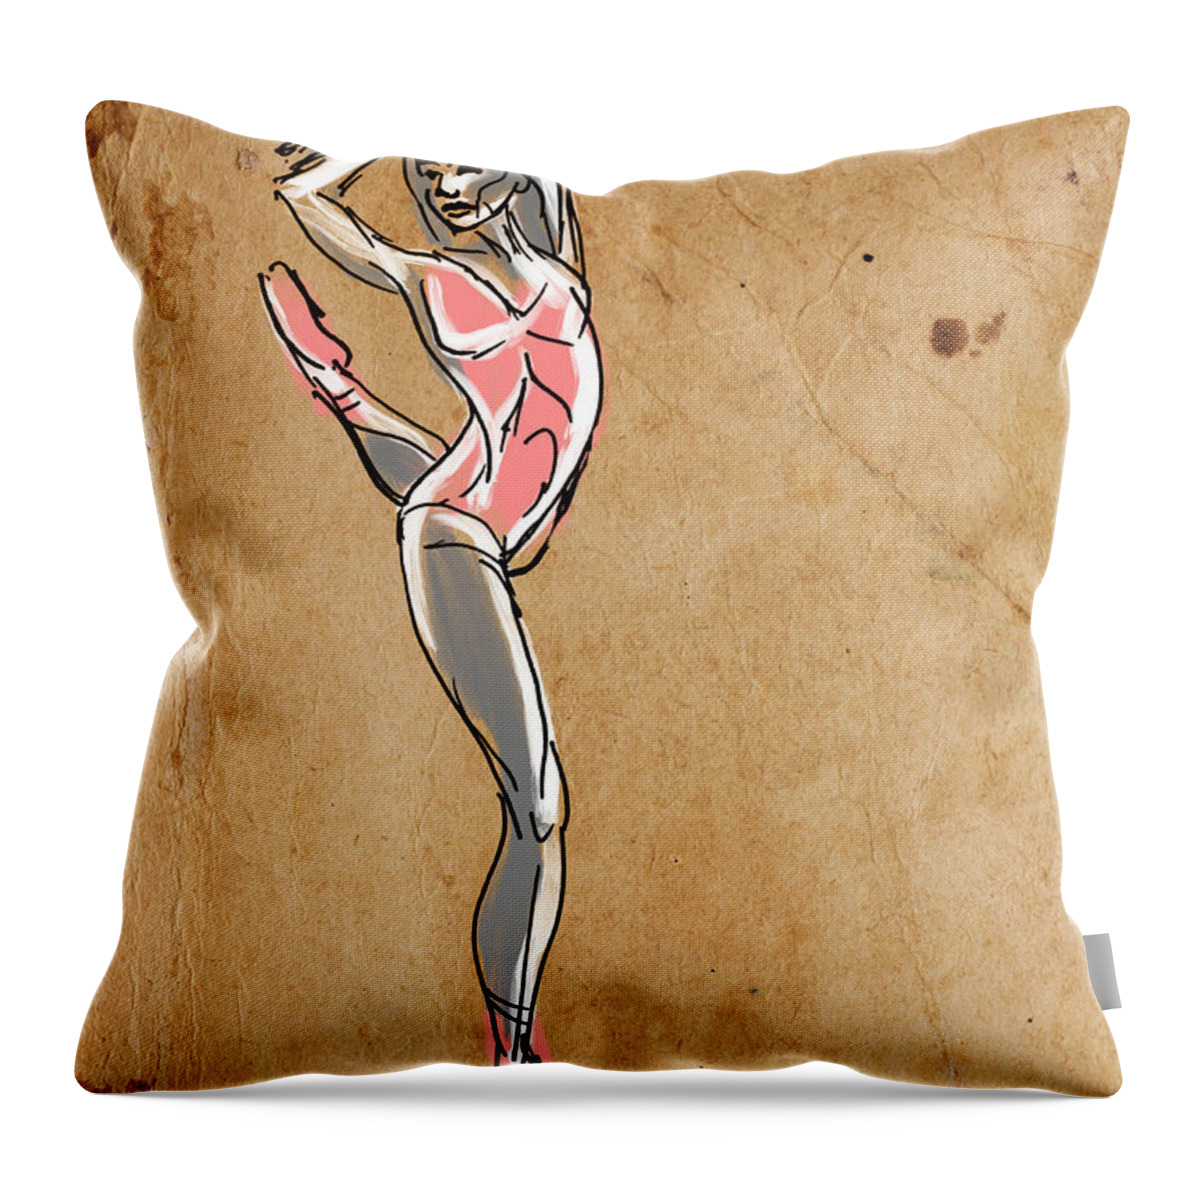 Dancer Throw Pillow featuring the digital art Joyful by Michael Kallstrom